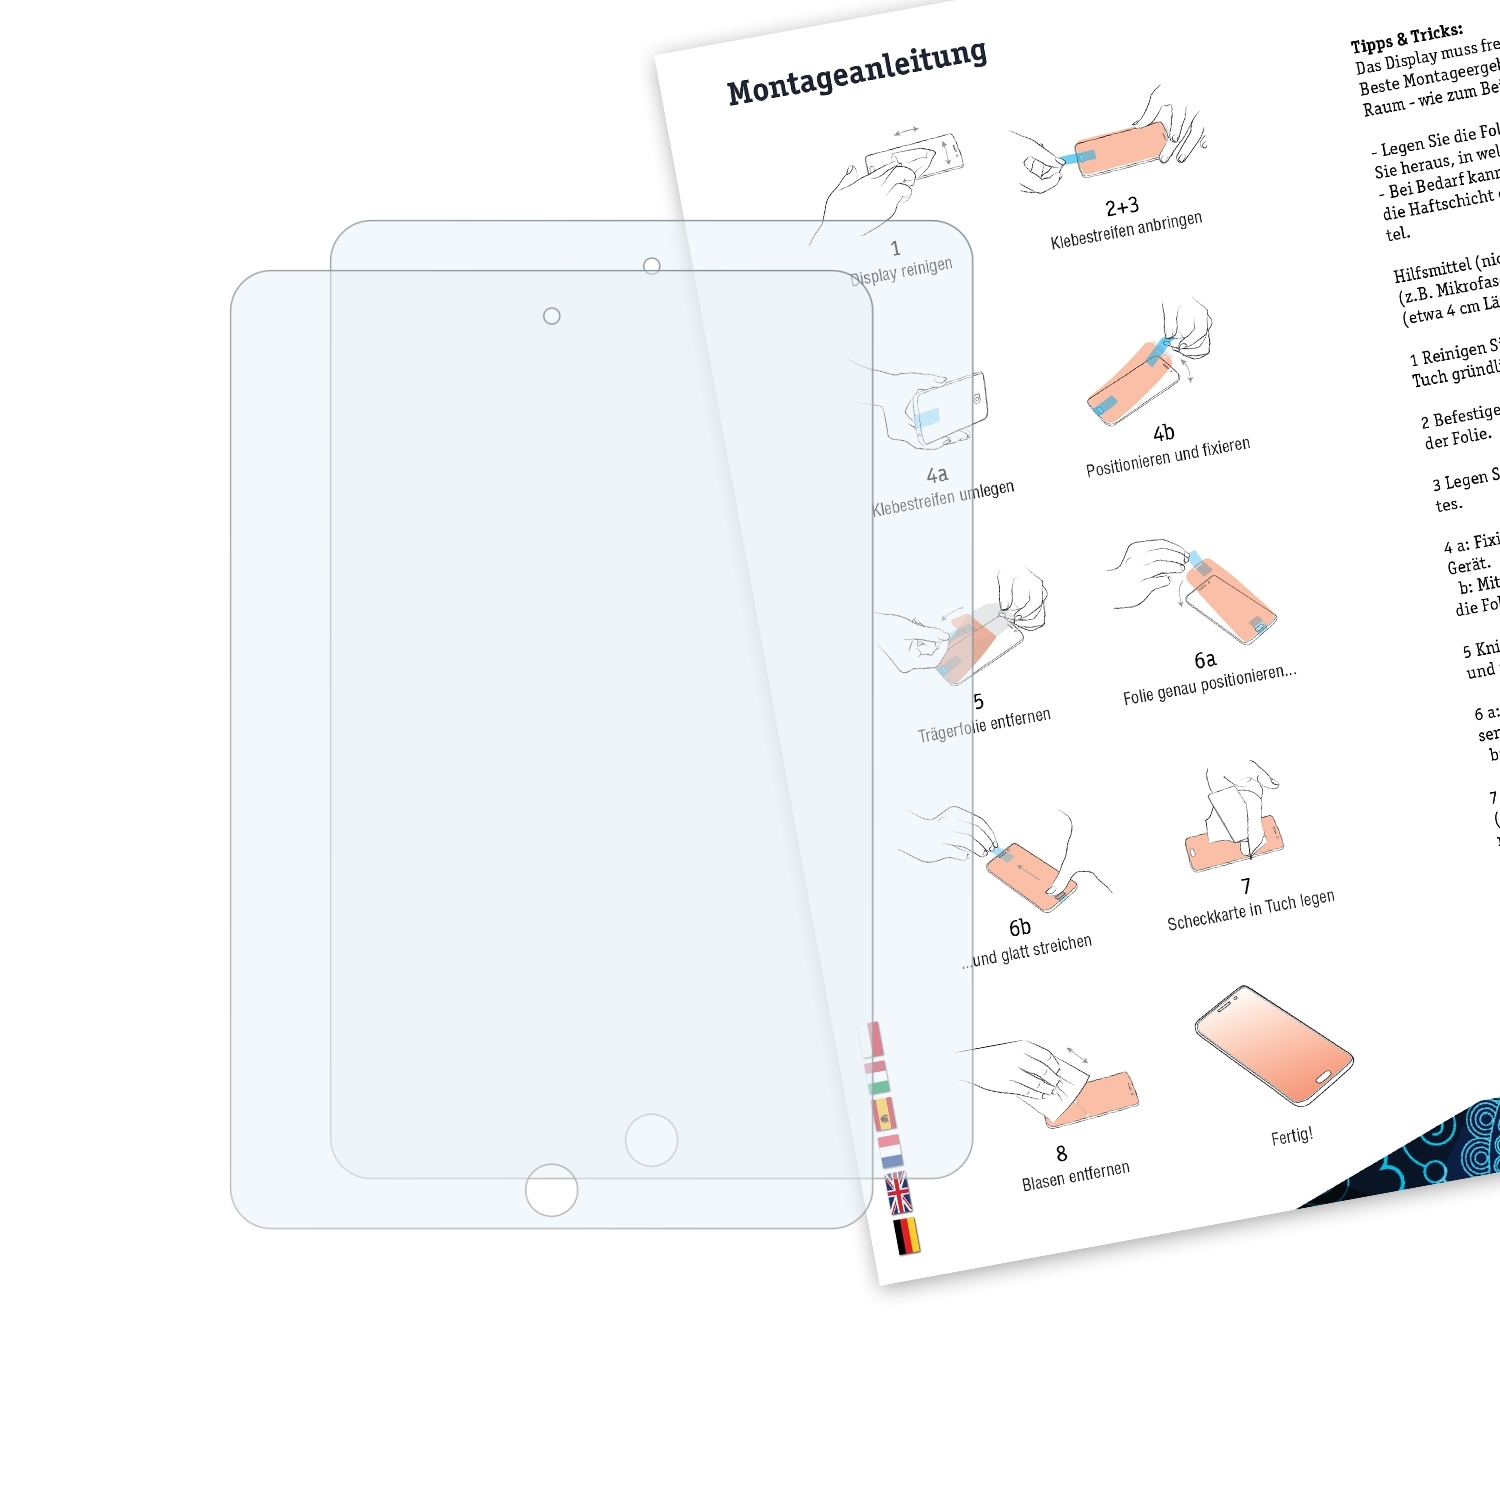 BRUNI 2x Basics-Clear Schutzfolie(für Apple iPad Mini (2012))